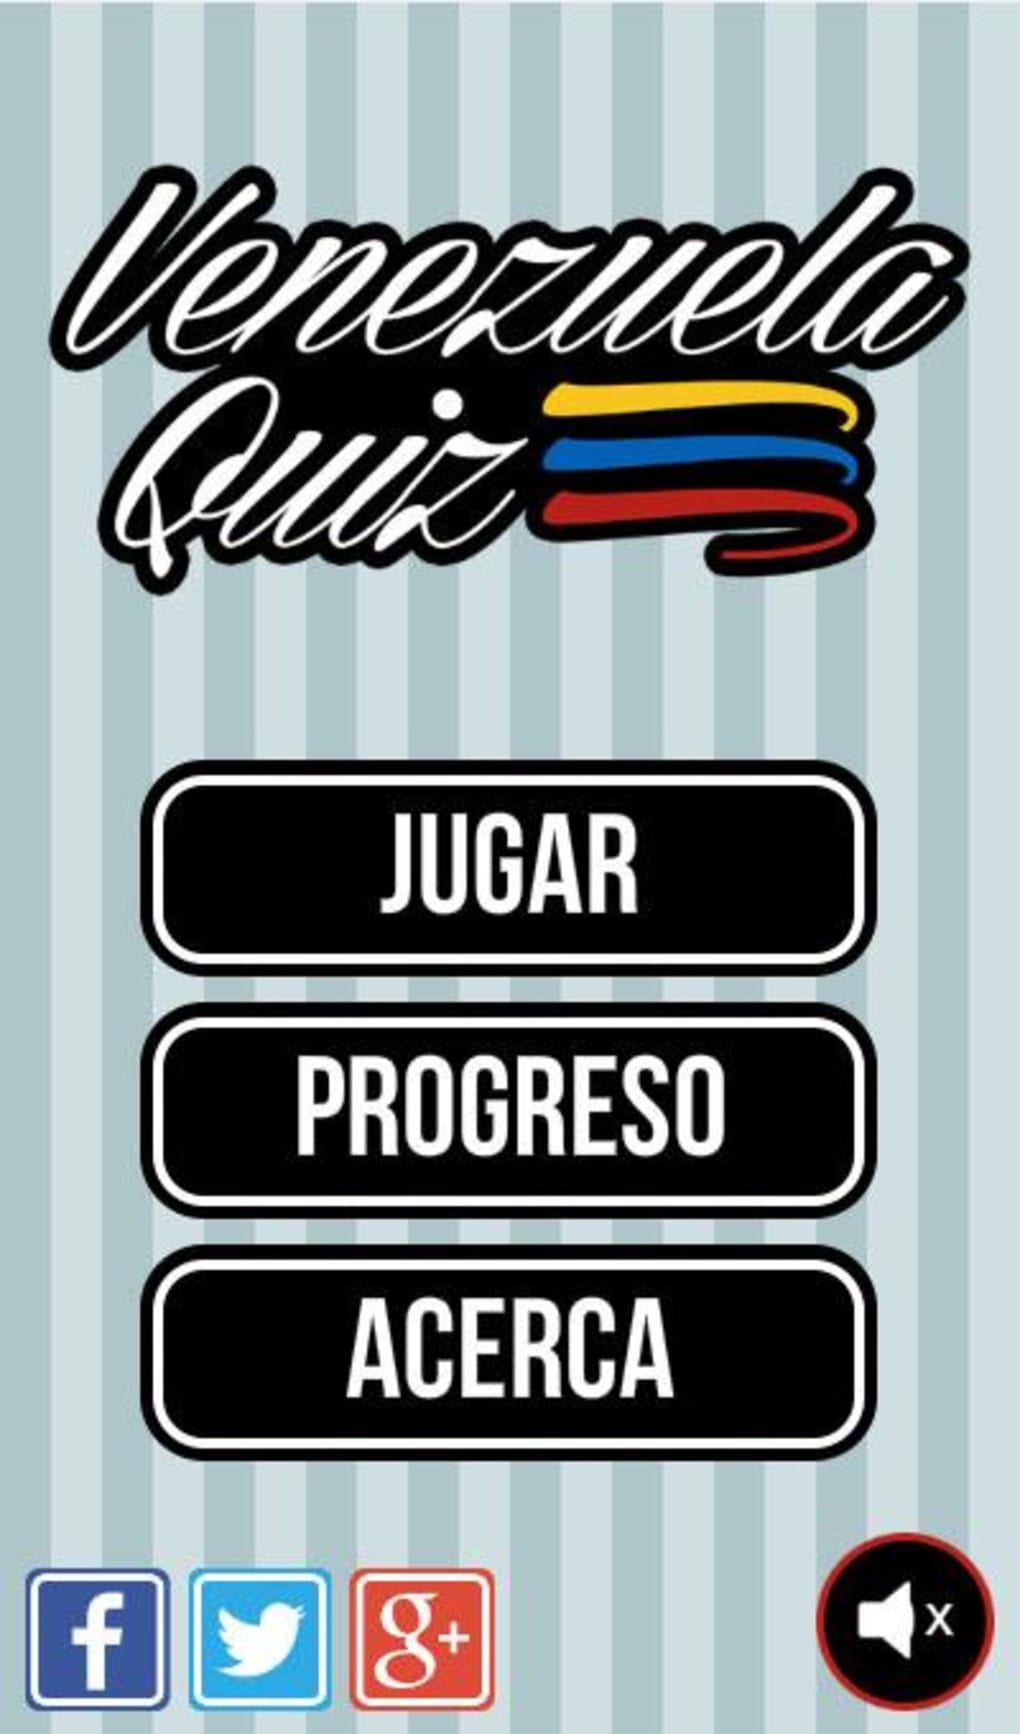 Venezuela Quiz para Android - Download